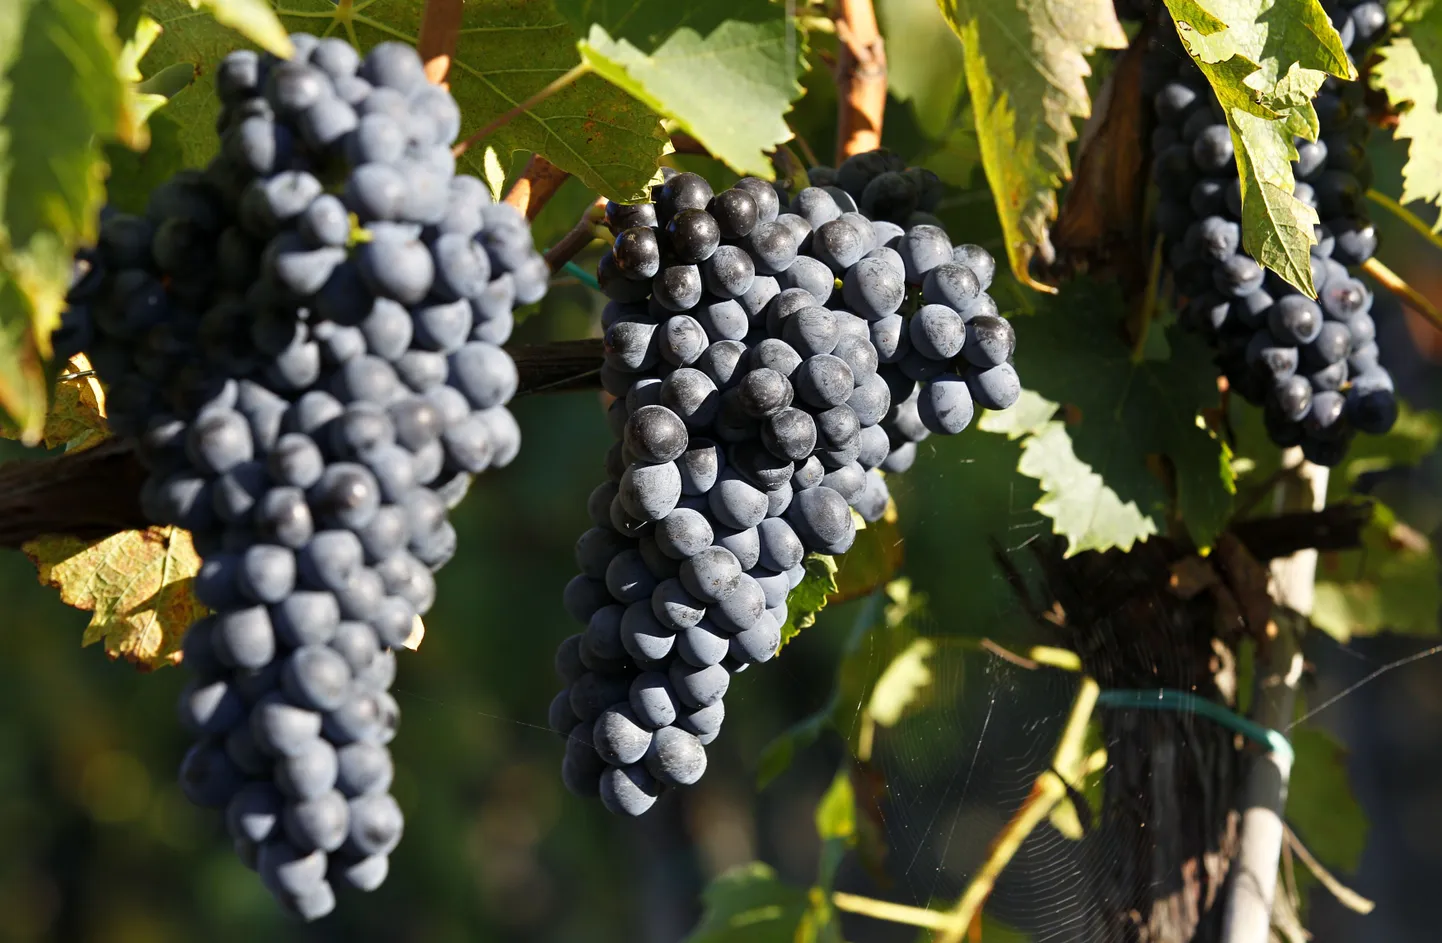 Pildil viinamarjad istanduses Itaalias Firenze lähedal, millel varsti enam Venemaale asja pole.